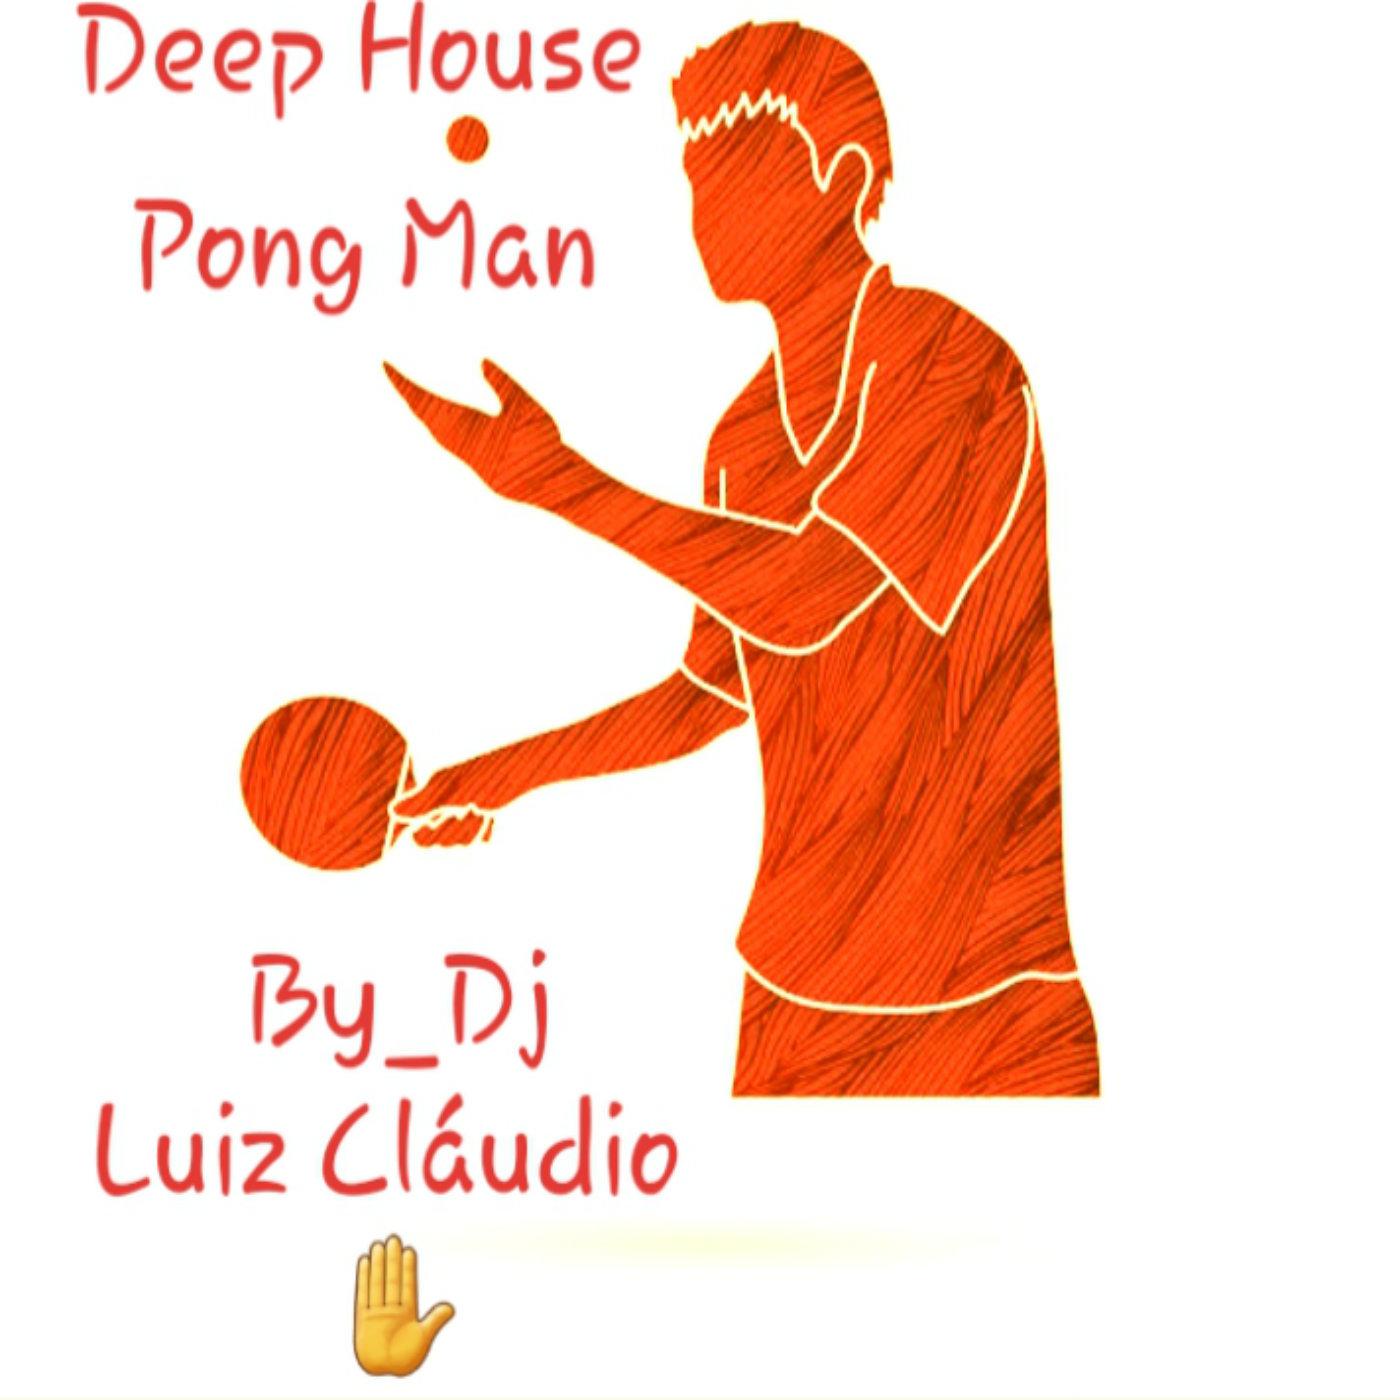 DJ Luiz Cláudio - Pong Man